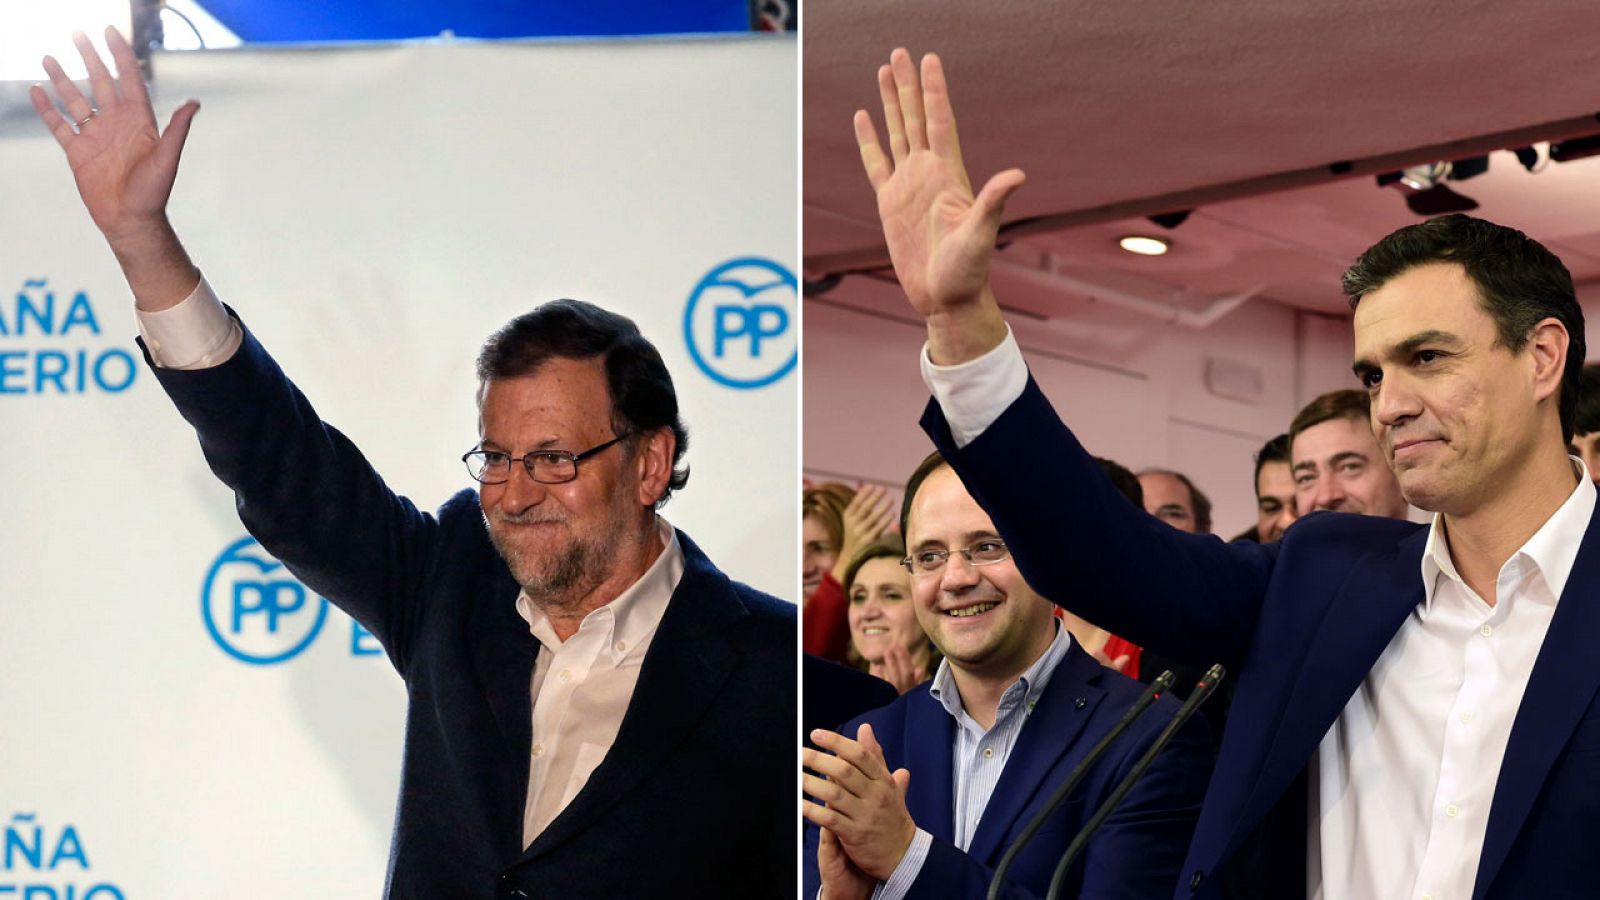 El candidato del PP, Mariano Rajoy, y el del PSOE, Pedro Sánchez, comparecen tras saberse los resultados